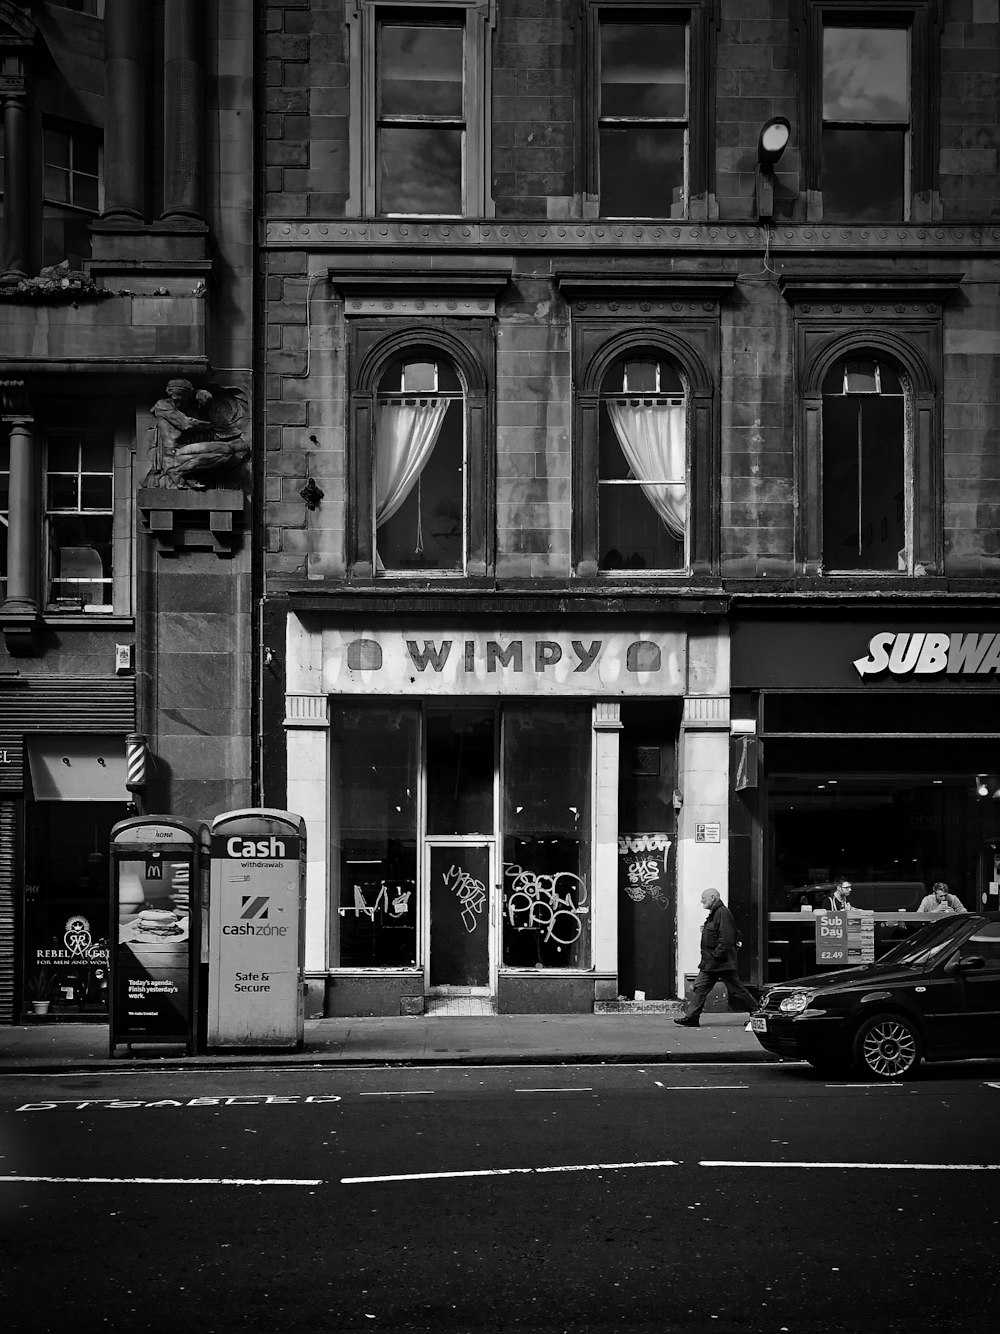 photo en niveaux de gris d’une personne se réveillant dans la rue à côté de la boutique Wimpy